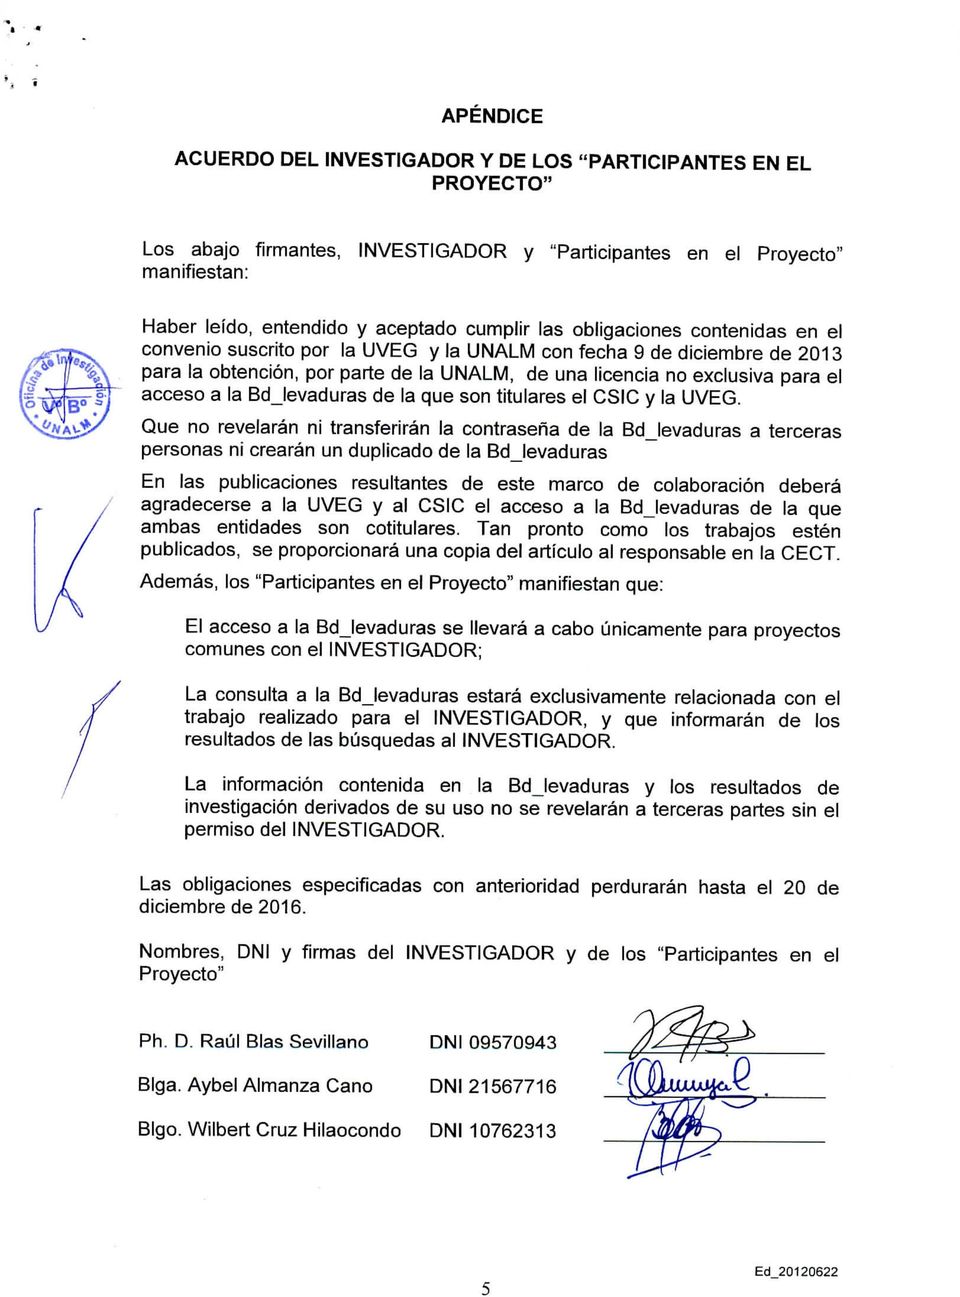 convenio suscrito por la UVEG y la UNALM con fecha 9 de diciembre de 2013 para la obtención, por parte de la UNALM, de una licencia no exclusiva para el acceso a la Bdjevaduras de la que son